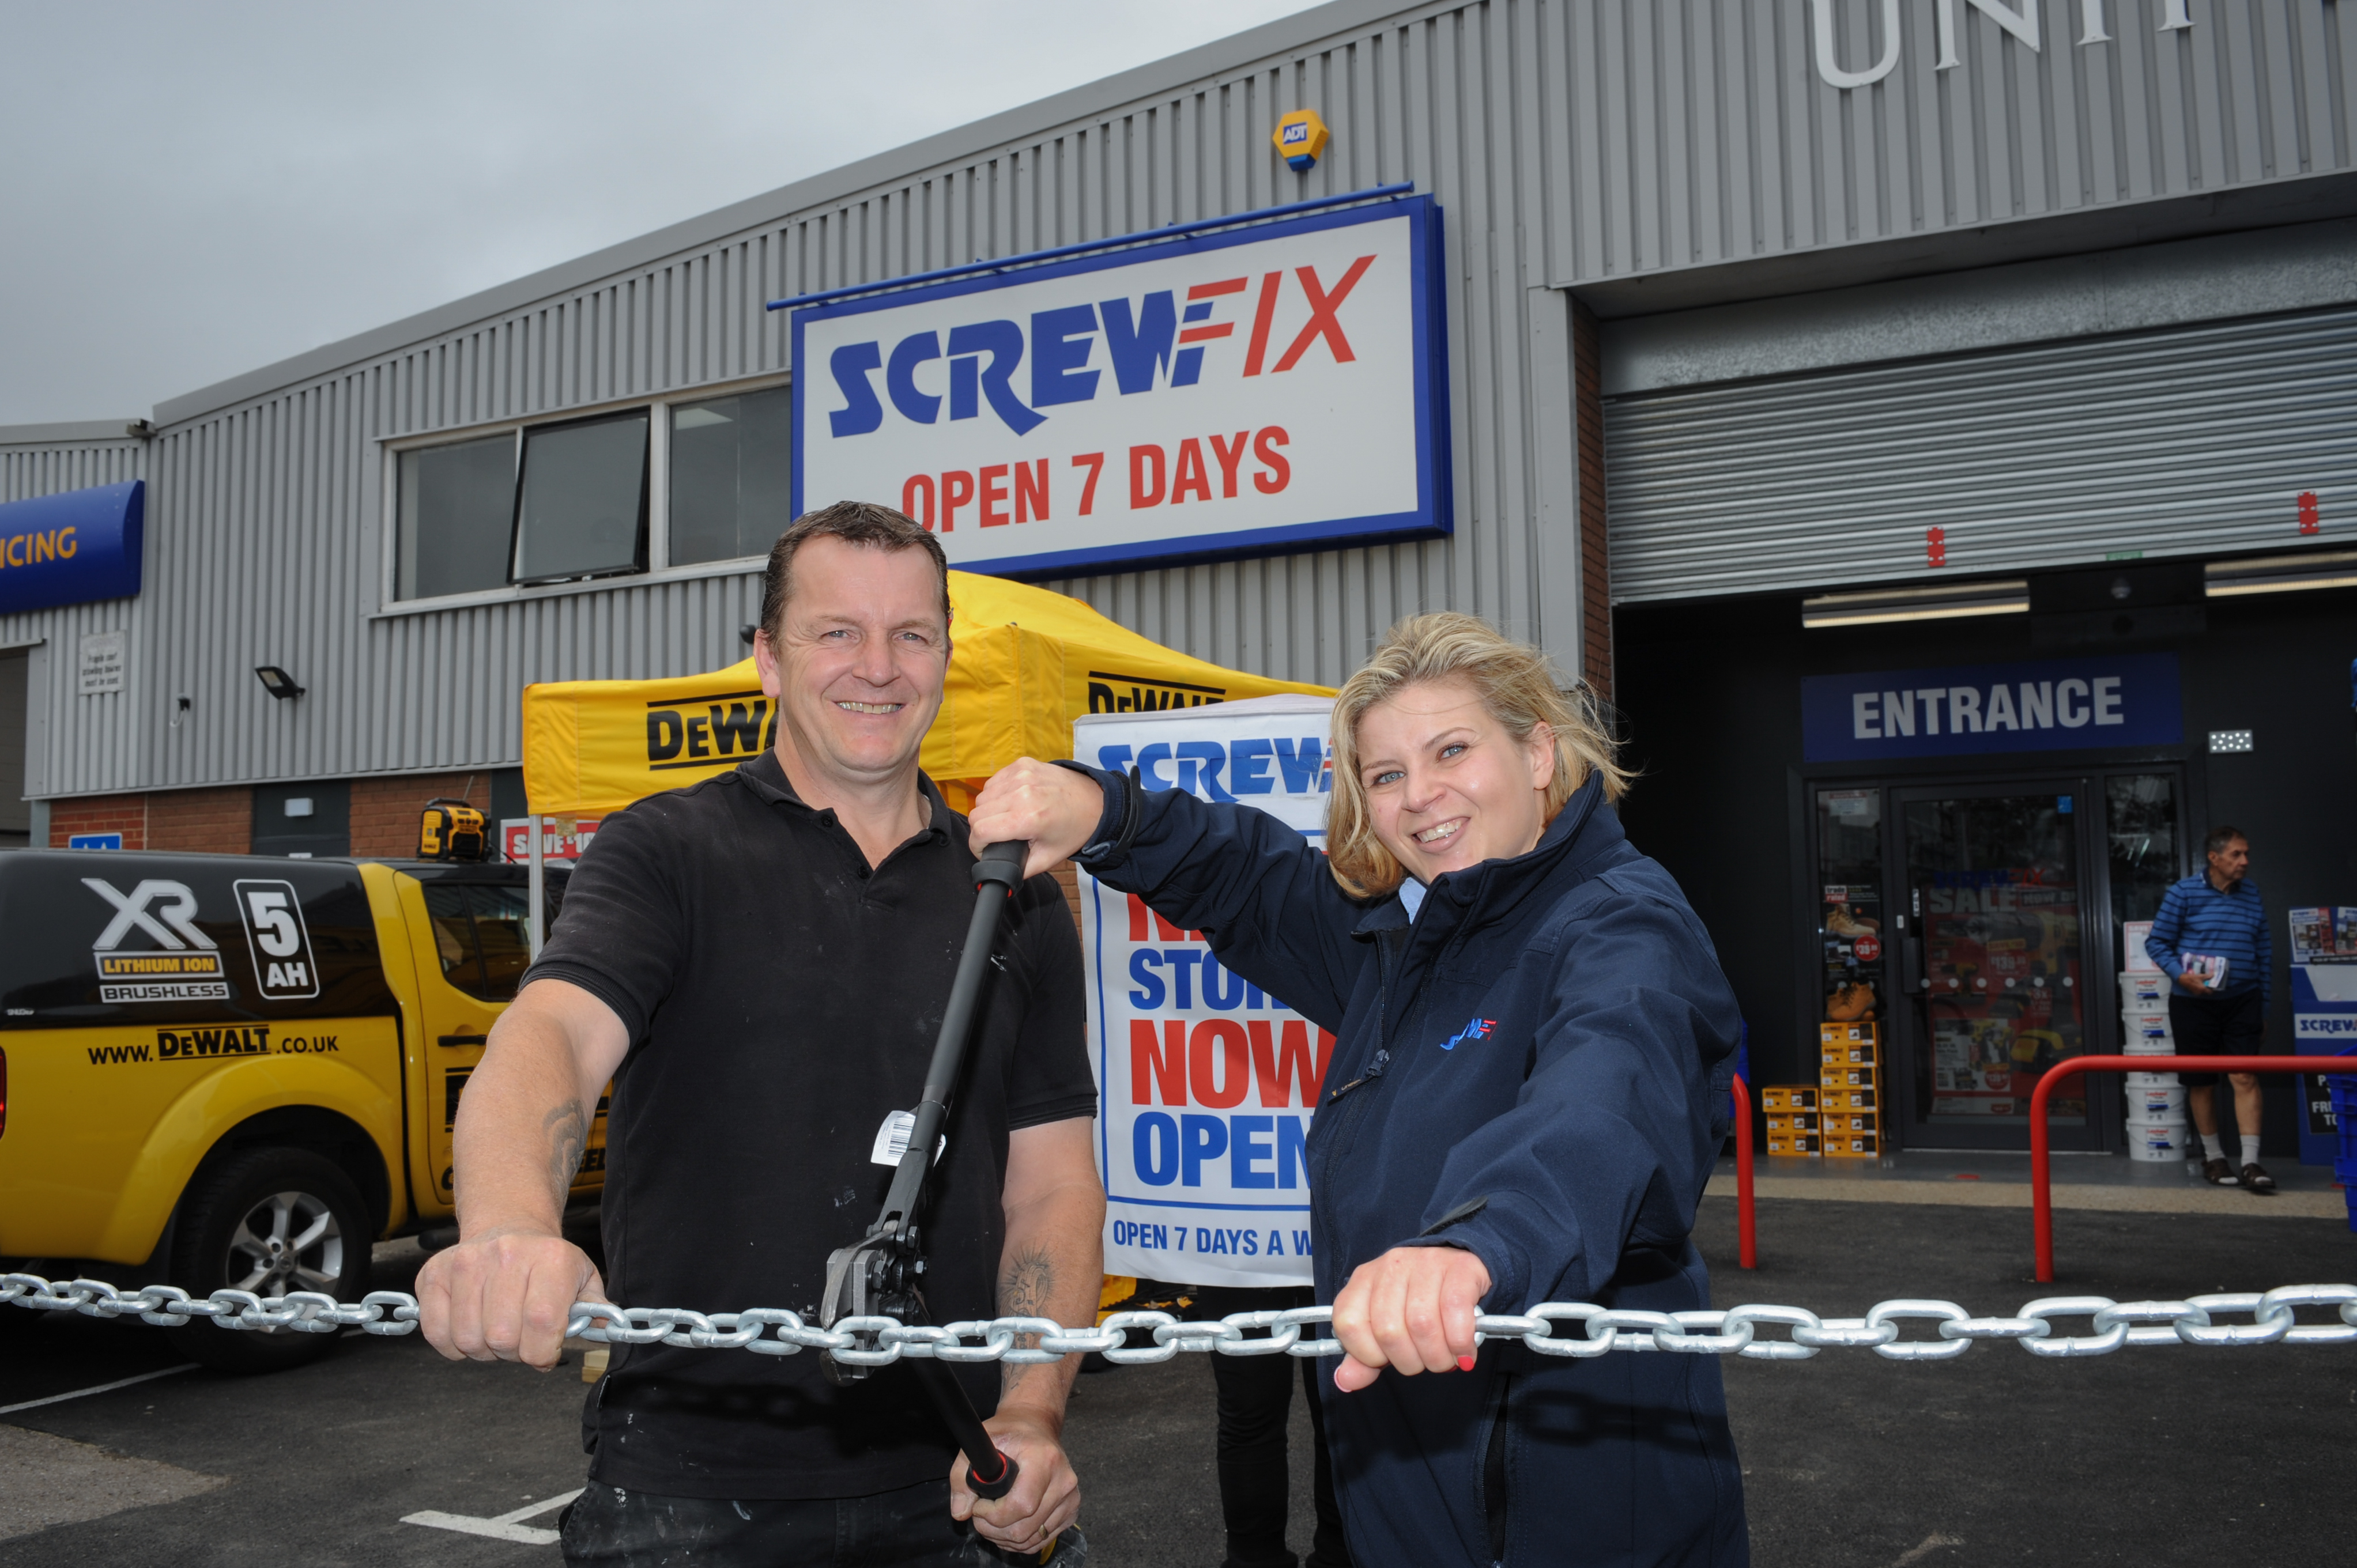 Bognor Regis’ first Screwfix store is declared a runaway success